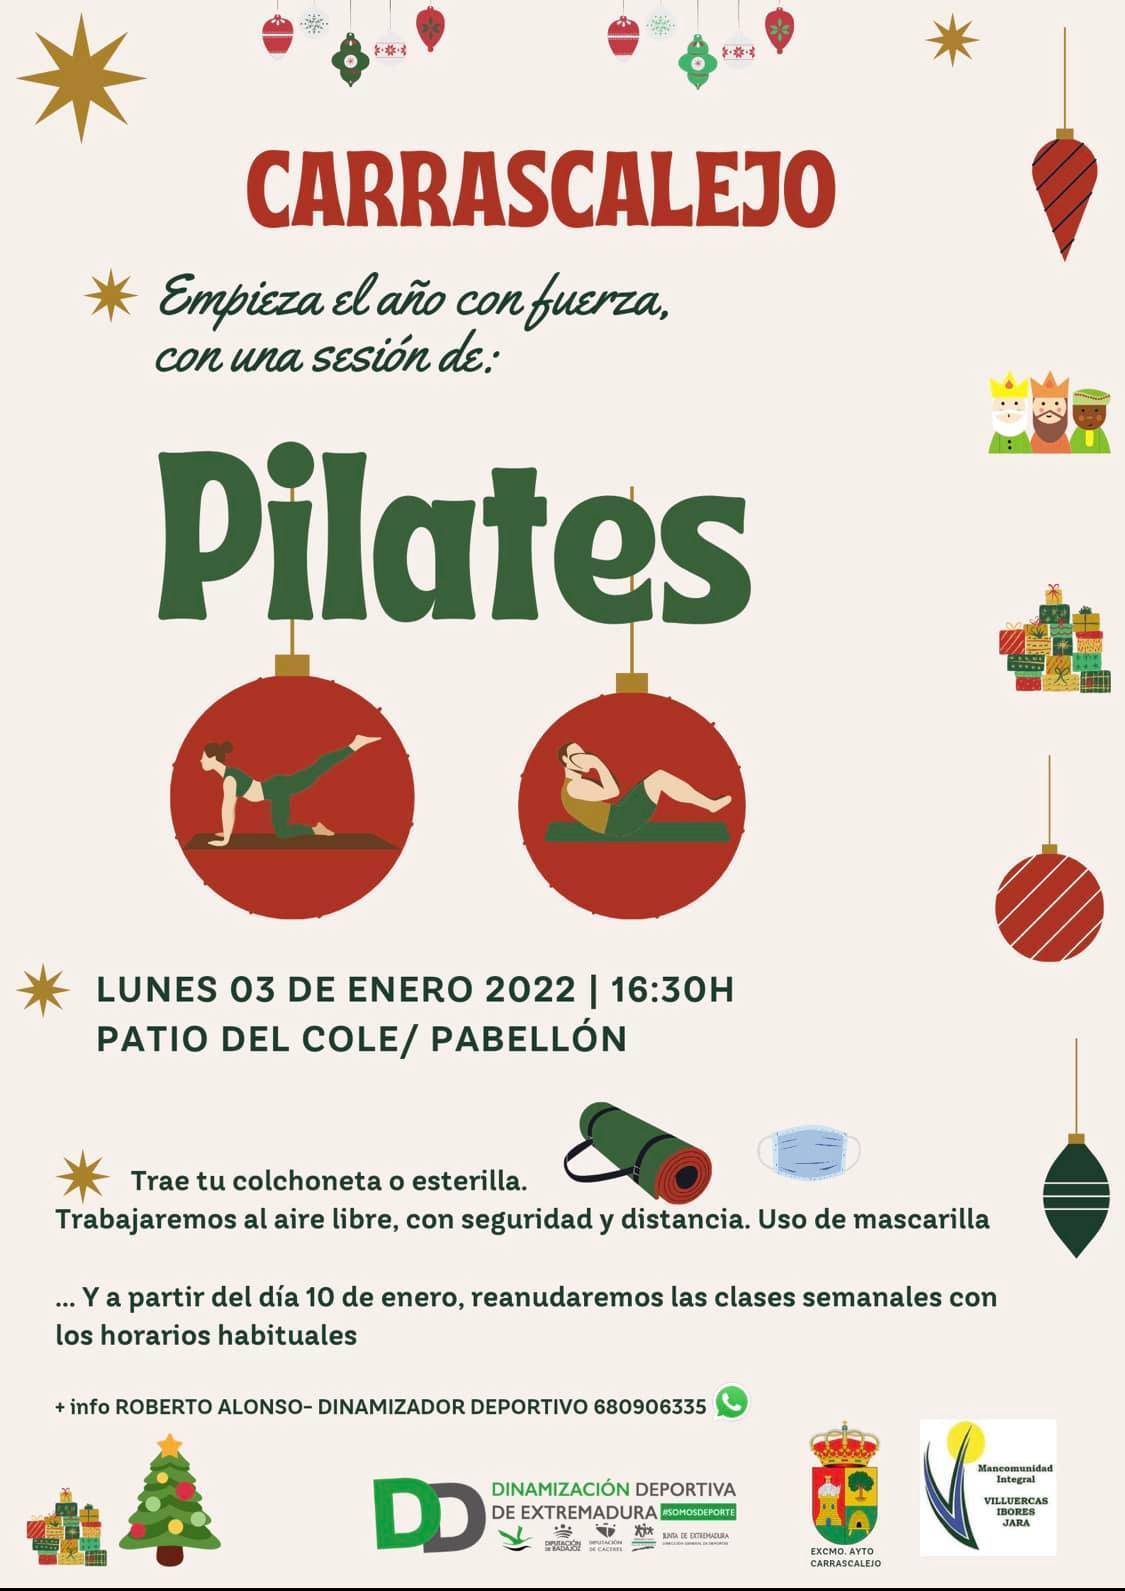 Sesión de pilates (enero 2022) - Carrascalejo (Cáceres)